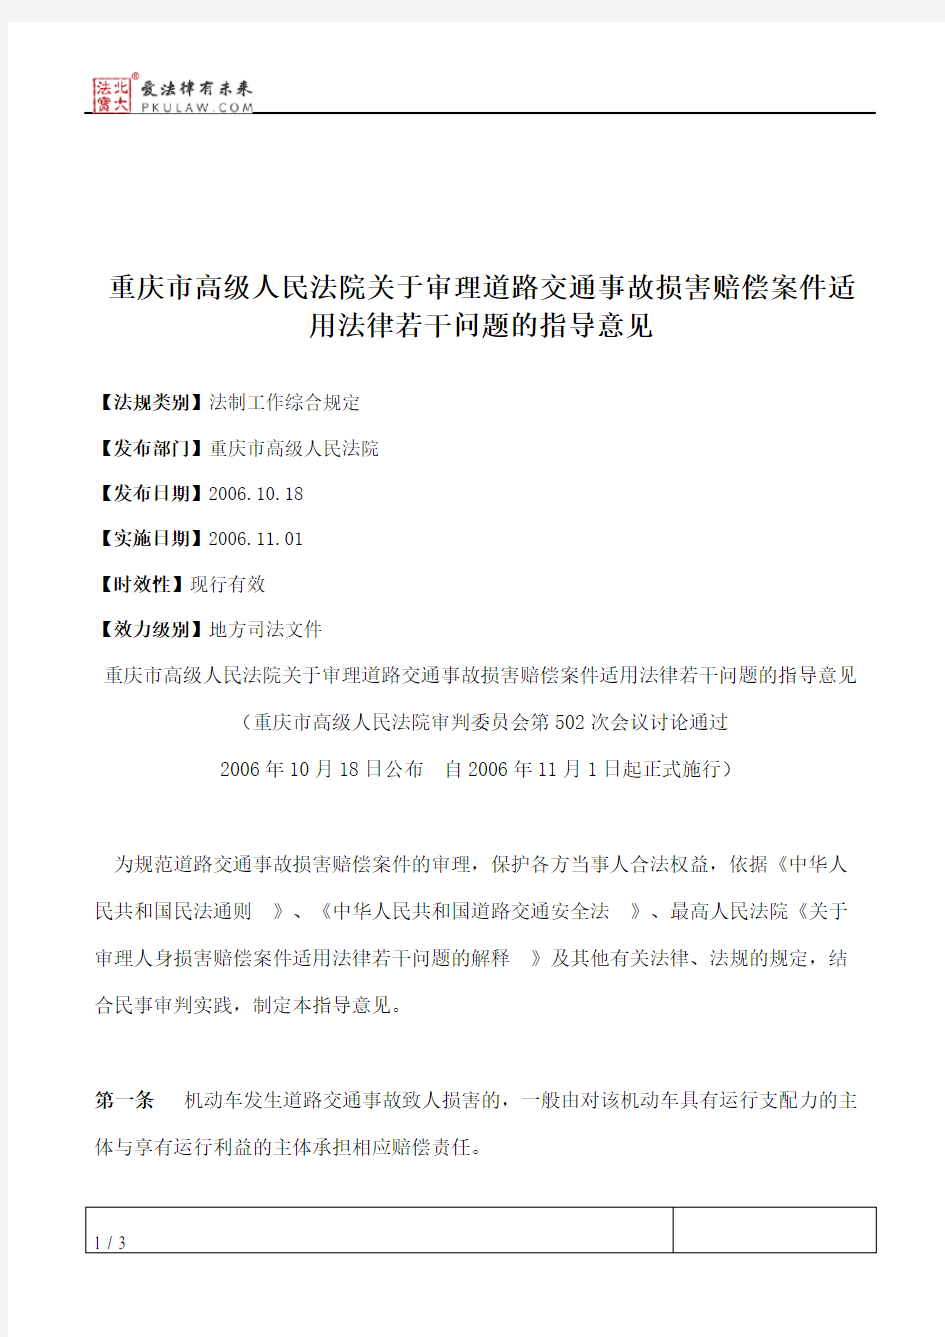 重庆市高级人民法院关于审理道路交通事故损害赔偿案件适用法律若